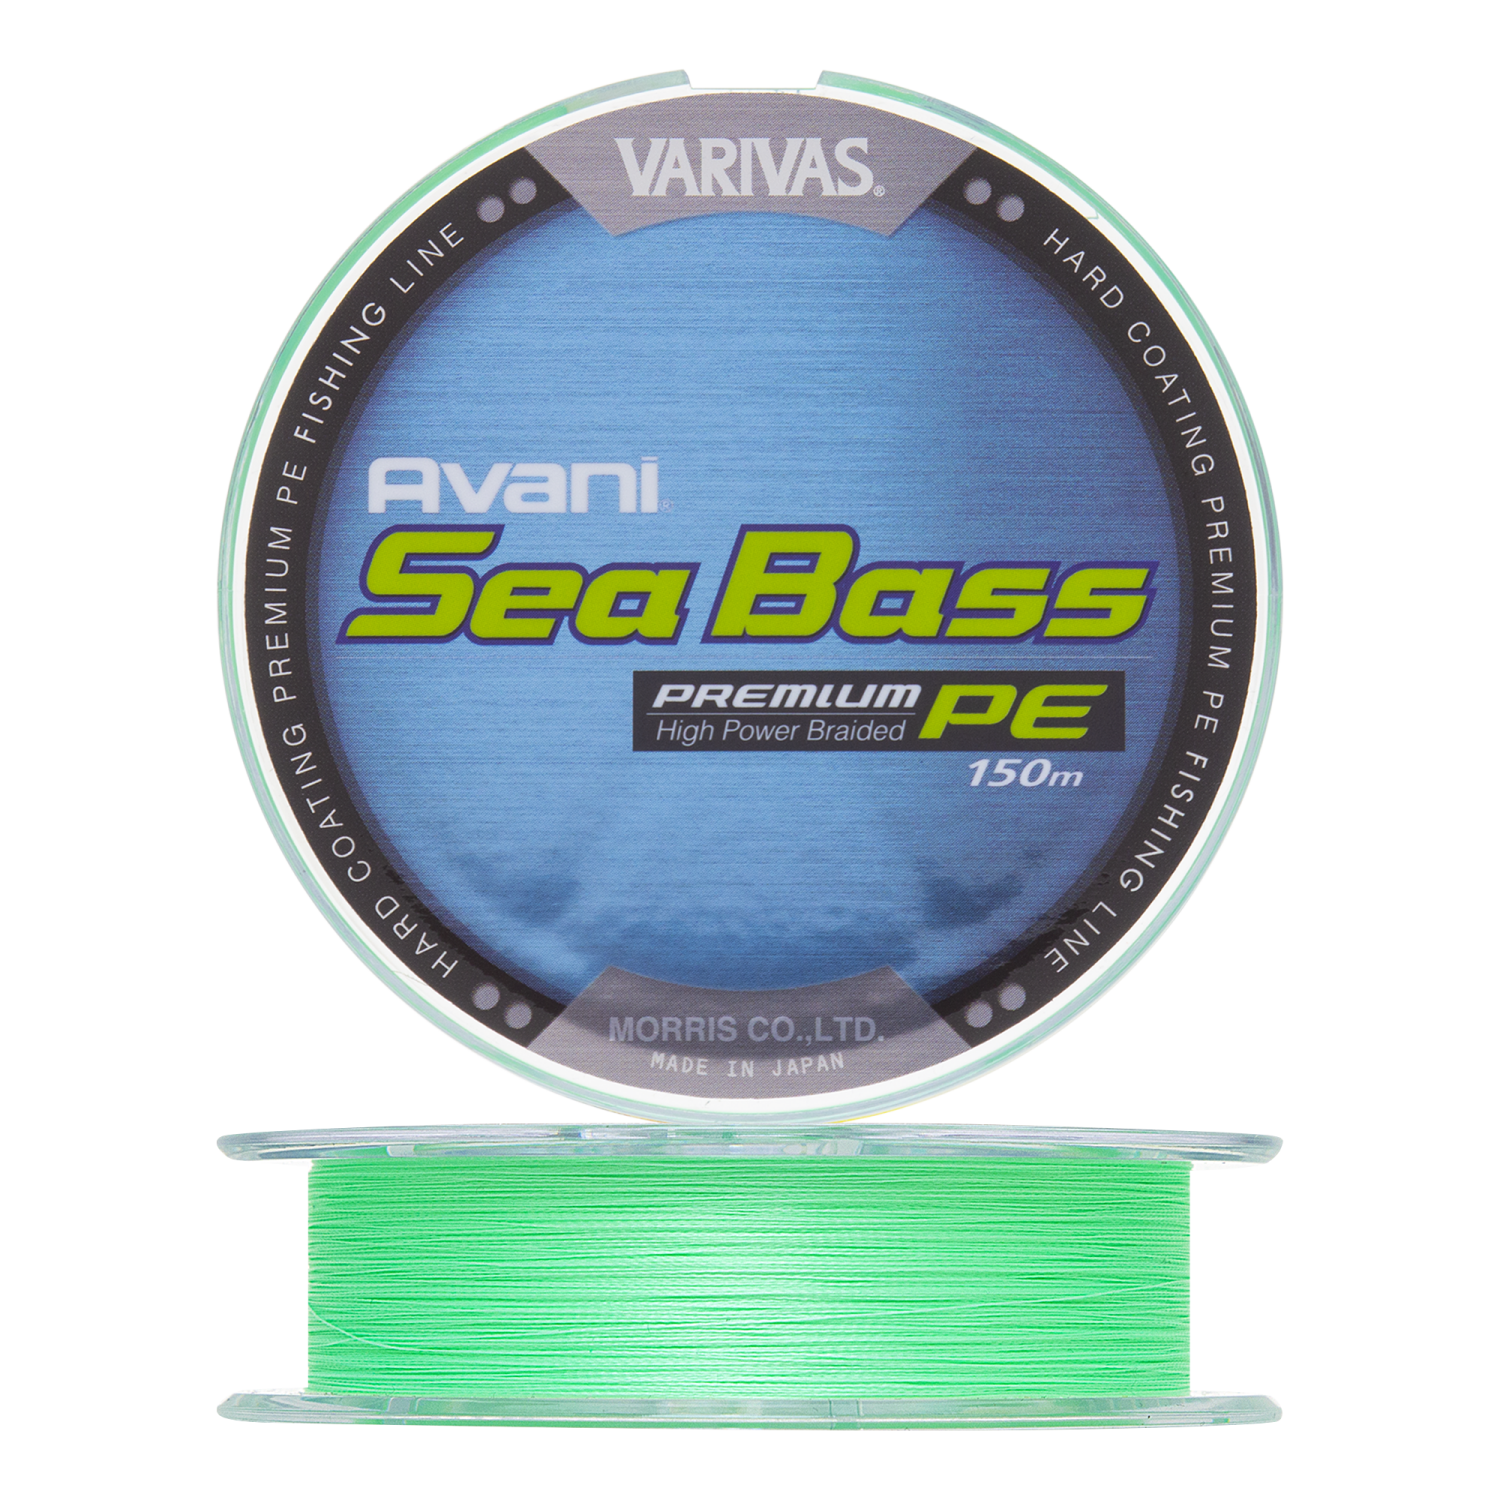 Шнур плетеный Varivas Avani Sea Bass Premium PE Х4 #0,8 0,148мм 150м (green)